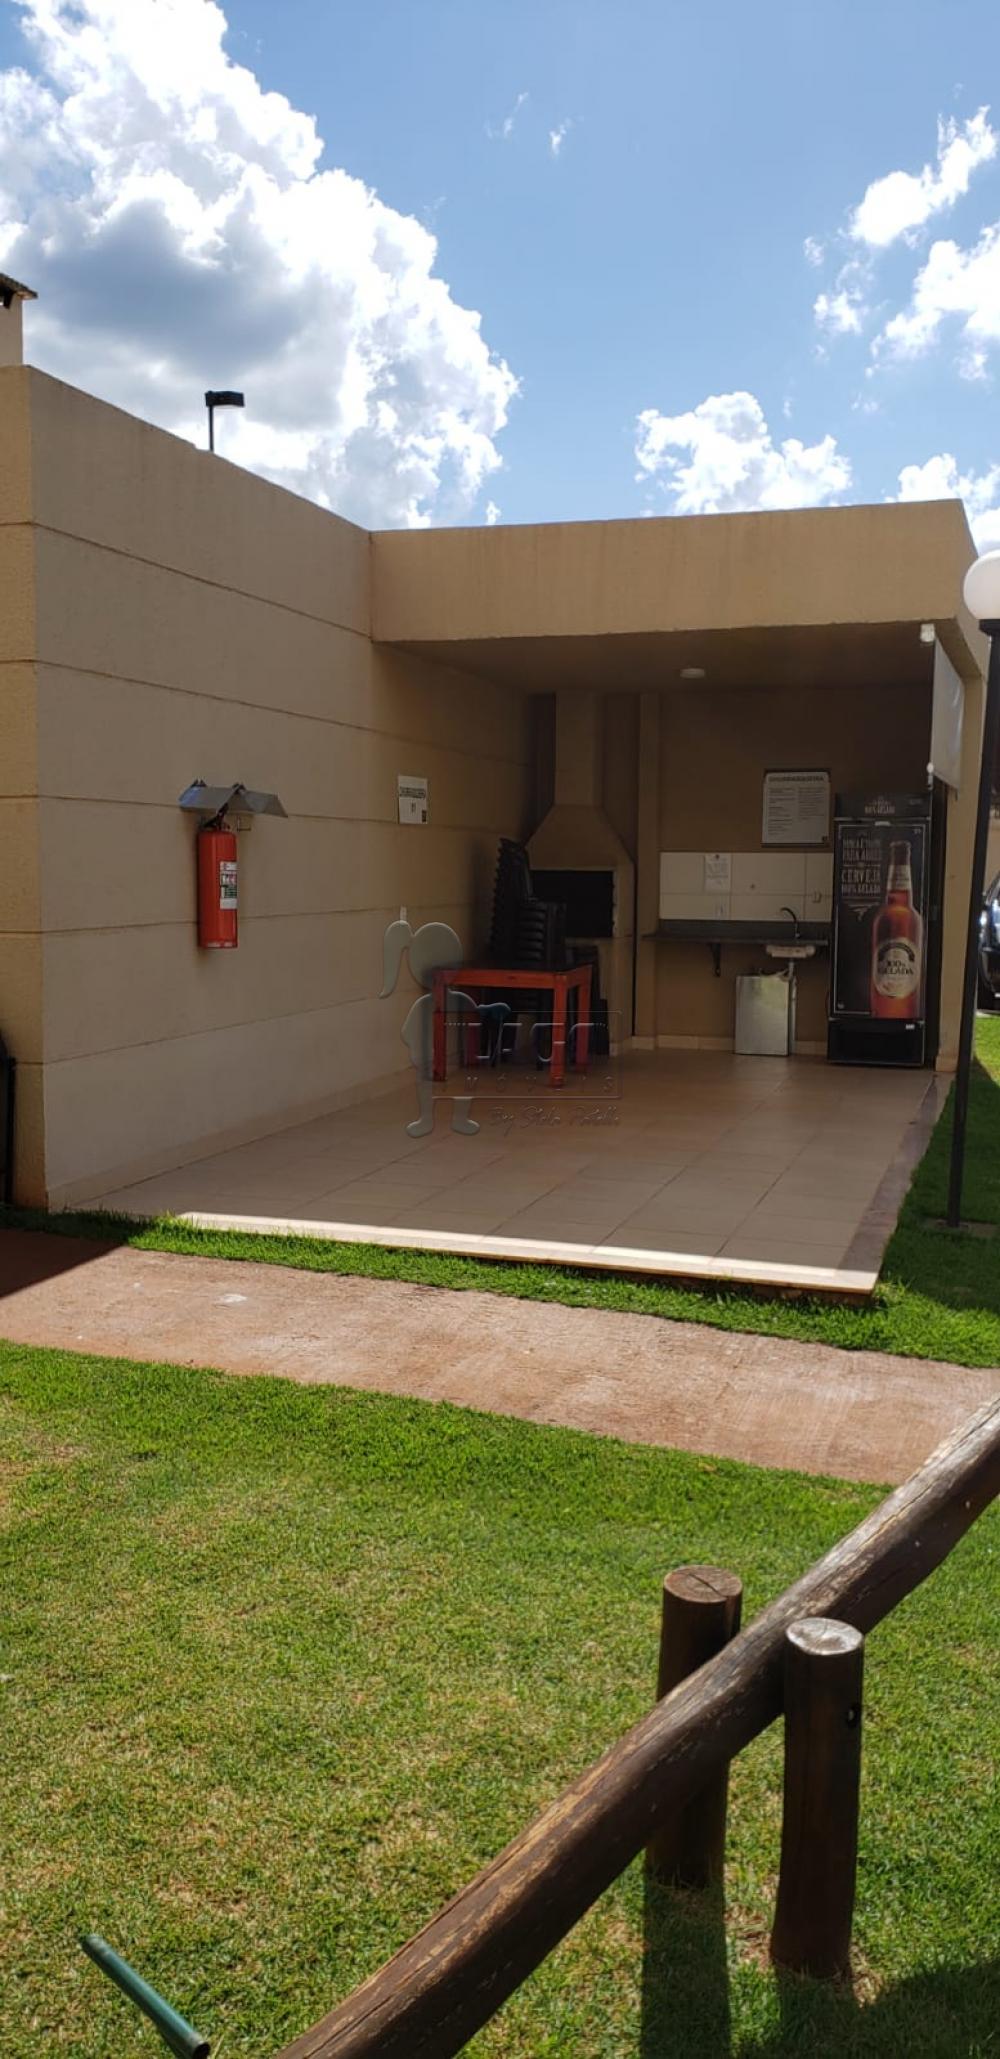 Comprar Apartamentos / Padrão em Ribeirão Preto R$ 297.000,00 - Foto 14